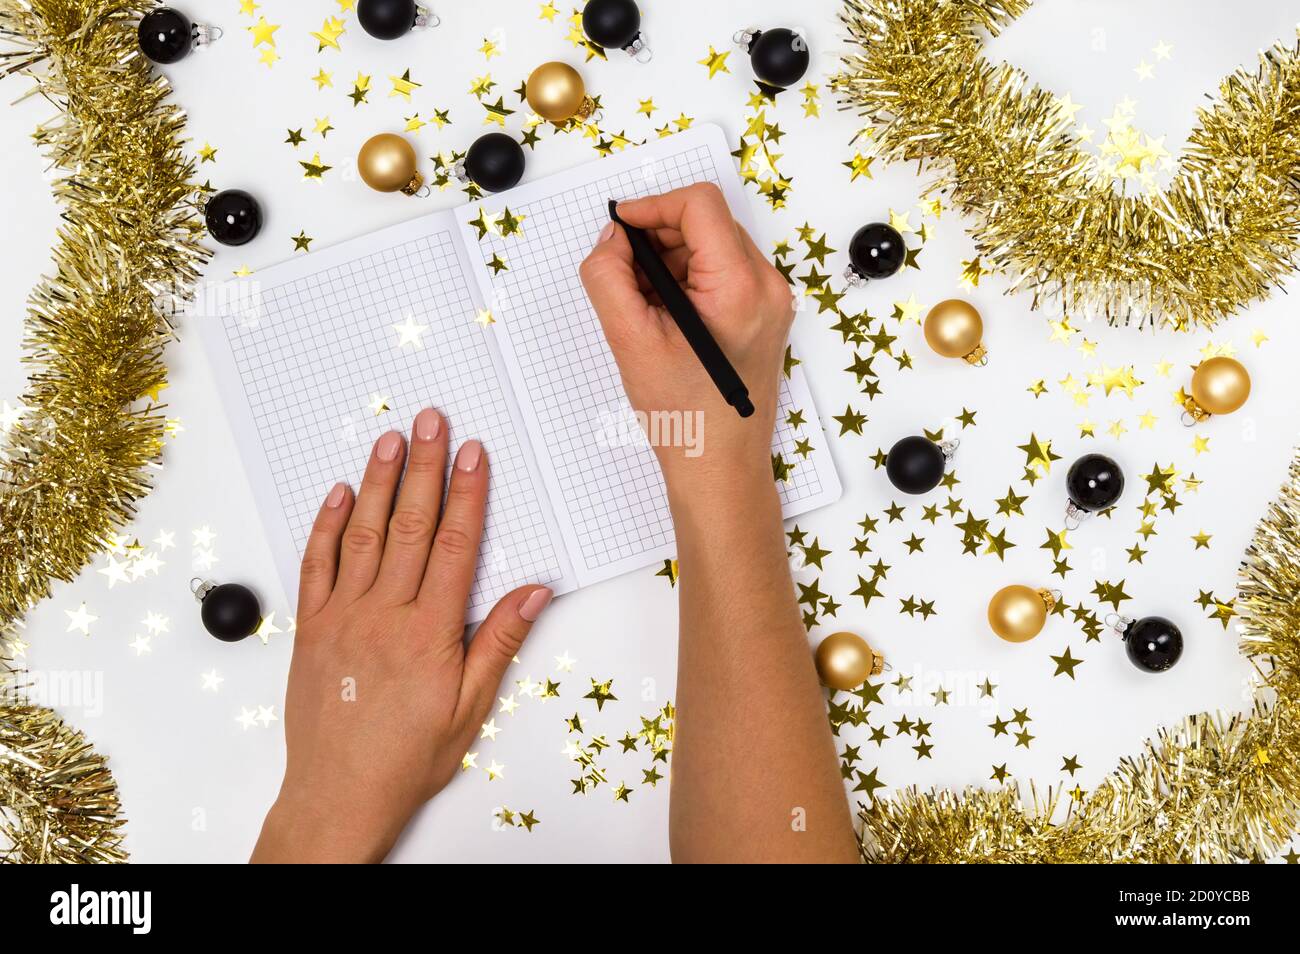 Mains de femmes avec stylo et carnet parmi des boules de Noël dorées et noires, guirlande et confettis étoiles. Liste de souhaits, résolutions du nouvel an ou plan 2021 Banque D'Images